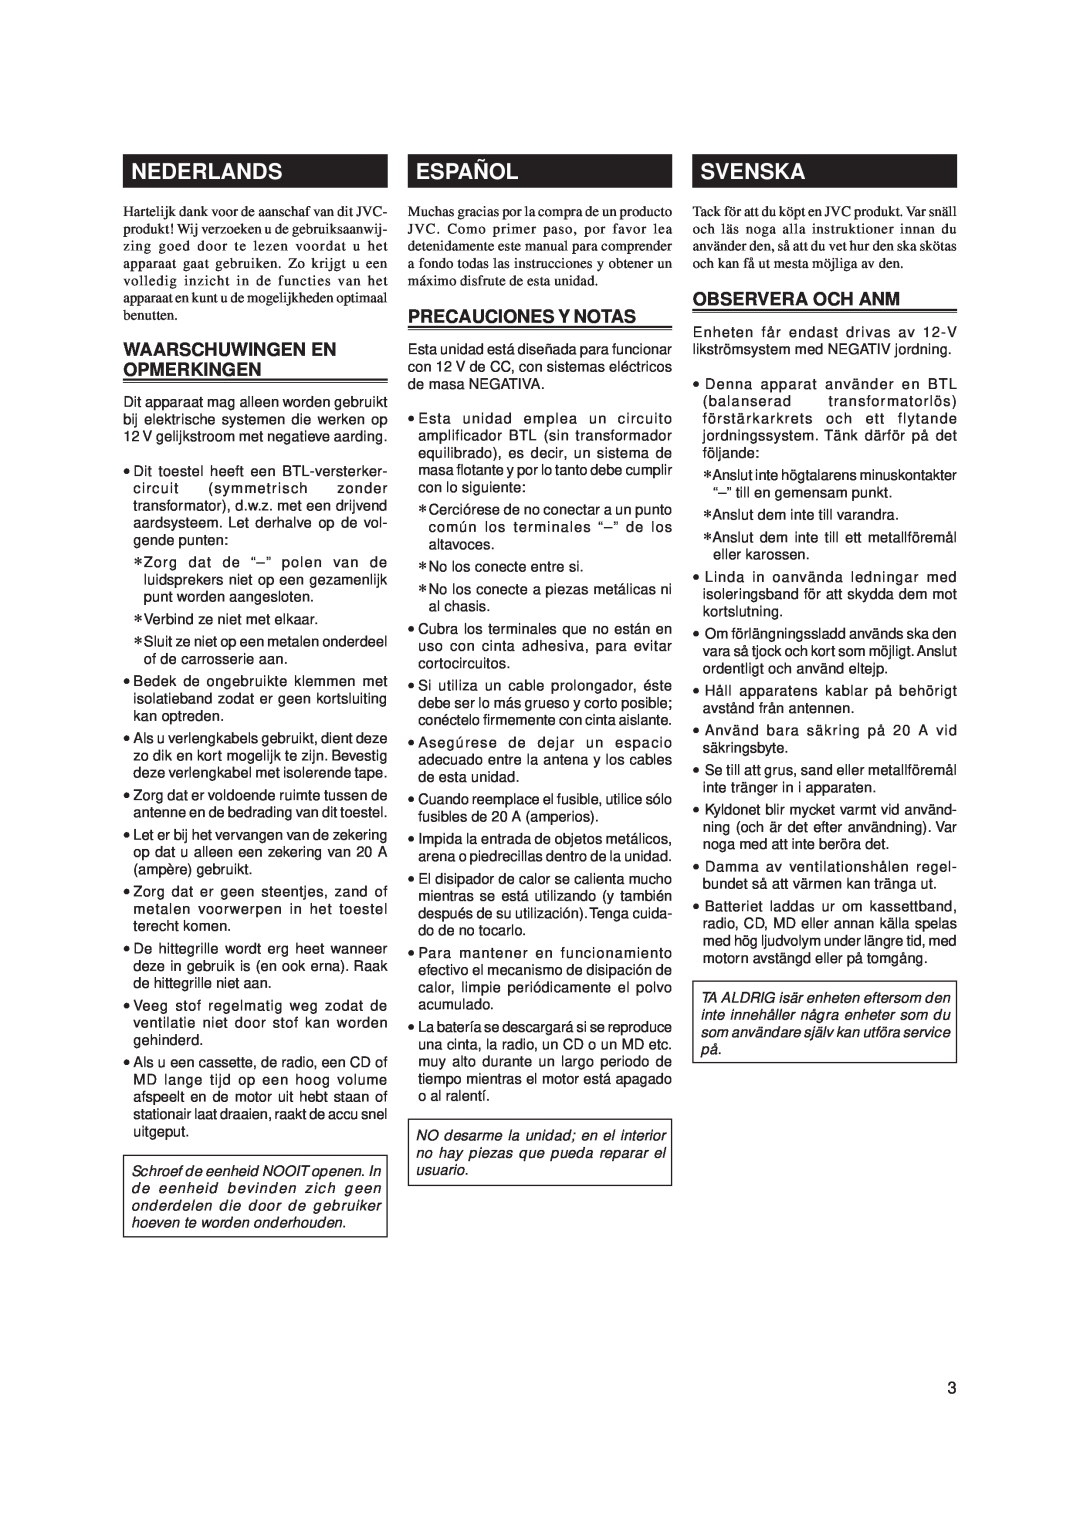 JVC KS-AX4500 manual Nederlands, Español, Svenska, Waarschuwingen En Opmerkingen, Precauciones Y Notas, Observera Och Anm 